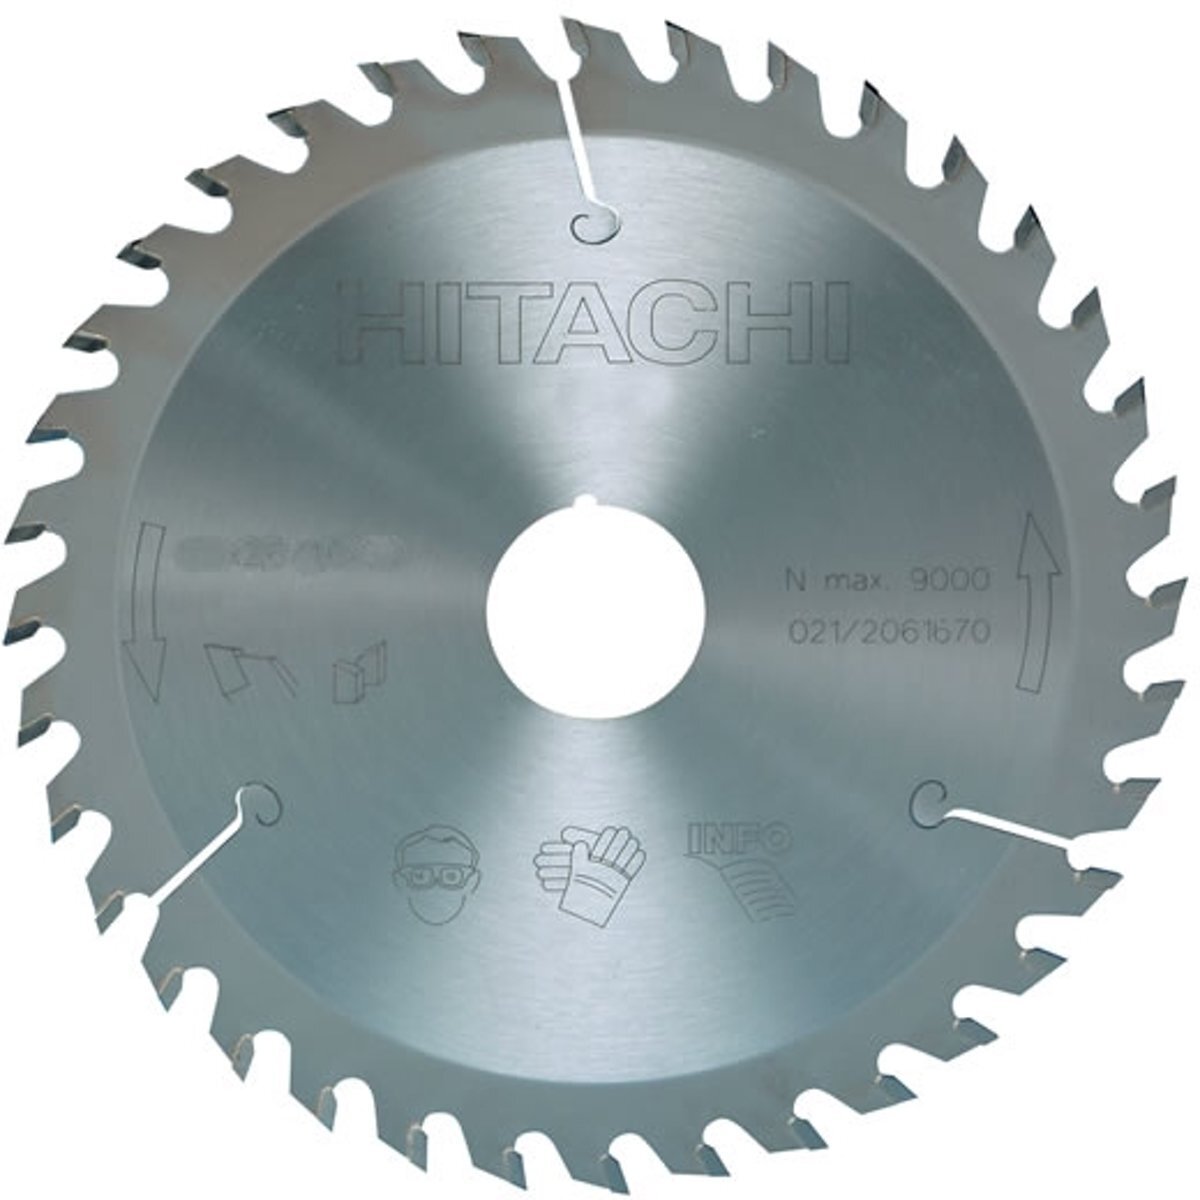 Hitachi Cirkelzaagblad voor hout 235x30mm 36t752457